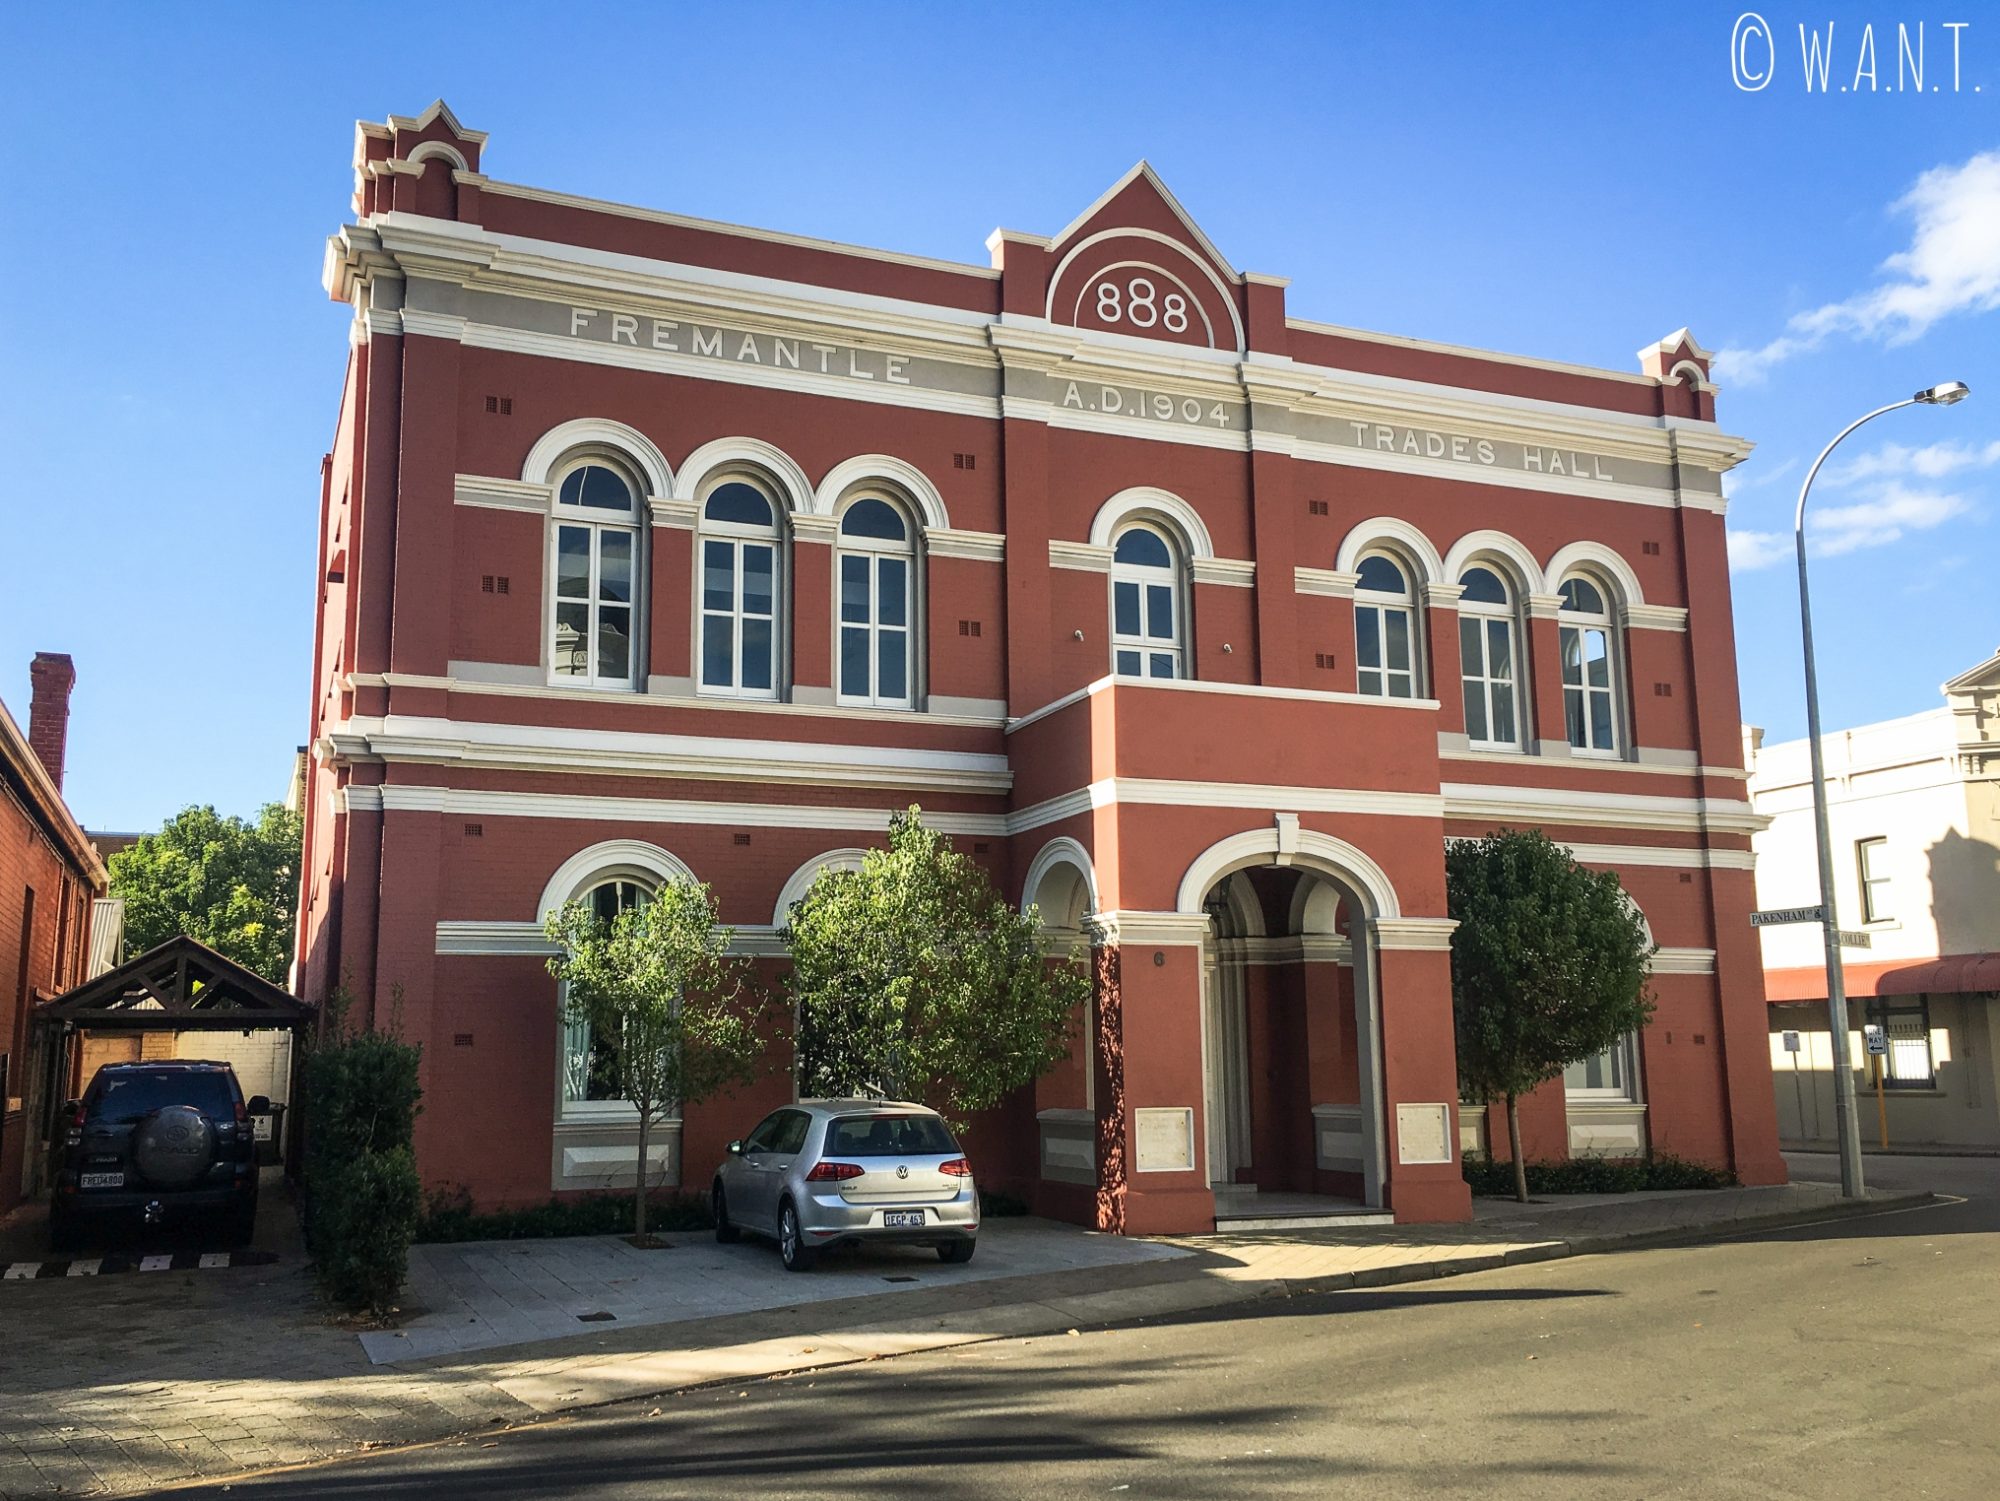 Les bâtiments des rues de Fremantle sont très caractéristiques de l'architecture du début du 20ème siècle